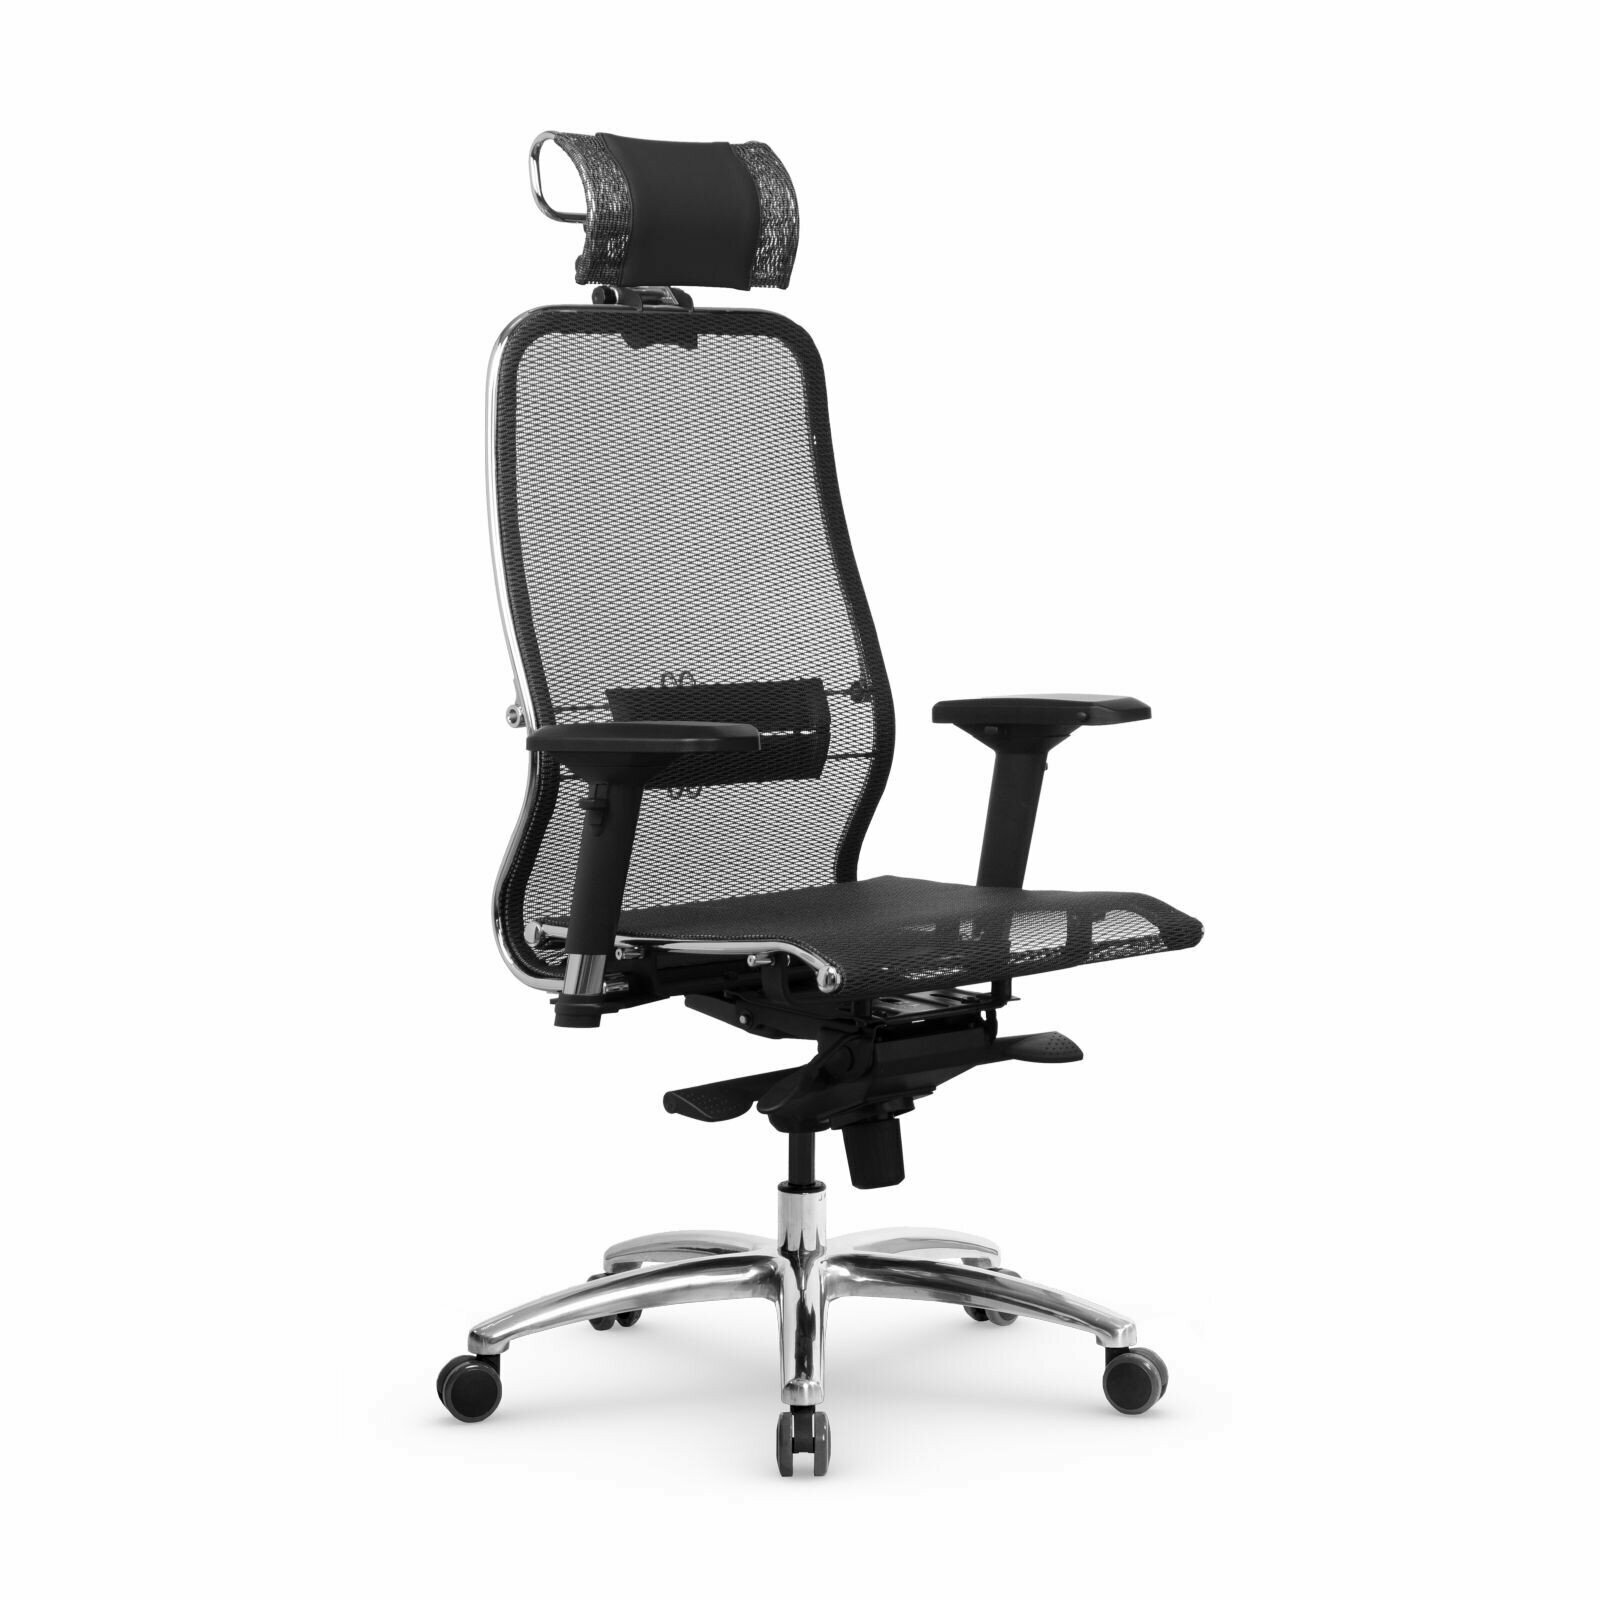 Компьютерное кресло METTA Samurai S-3.04 офисное, обивка: текстиль, цвет: черный